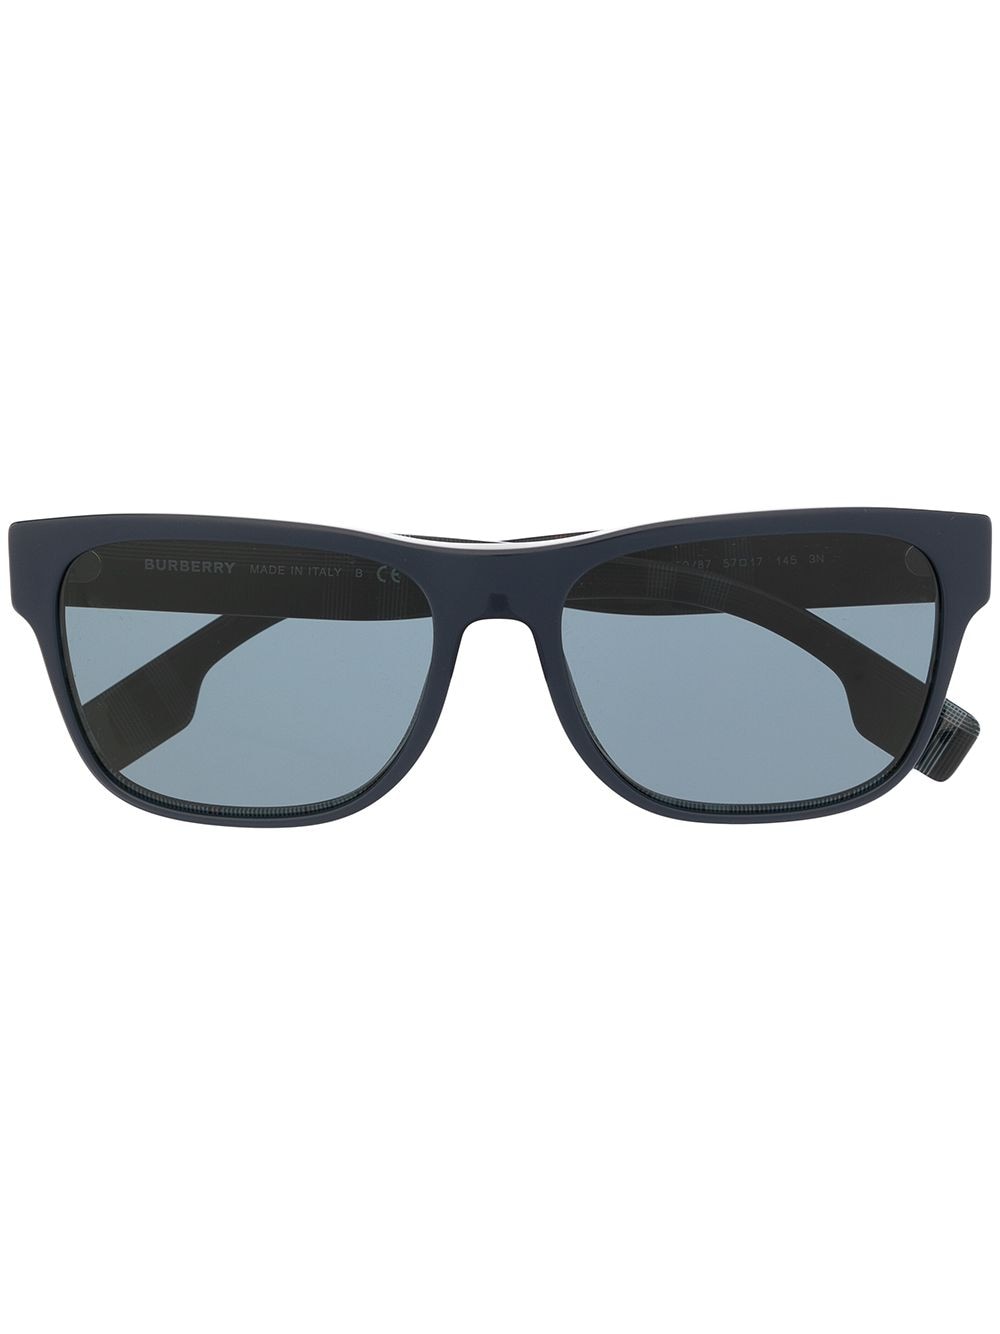 фото Burberry eyewear солнцезащитные очки carter в квадратной оправе